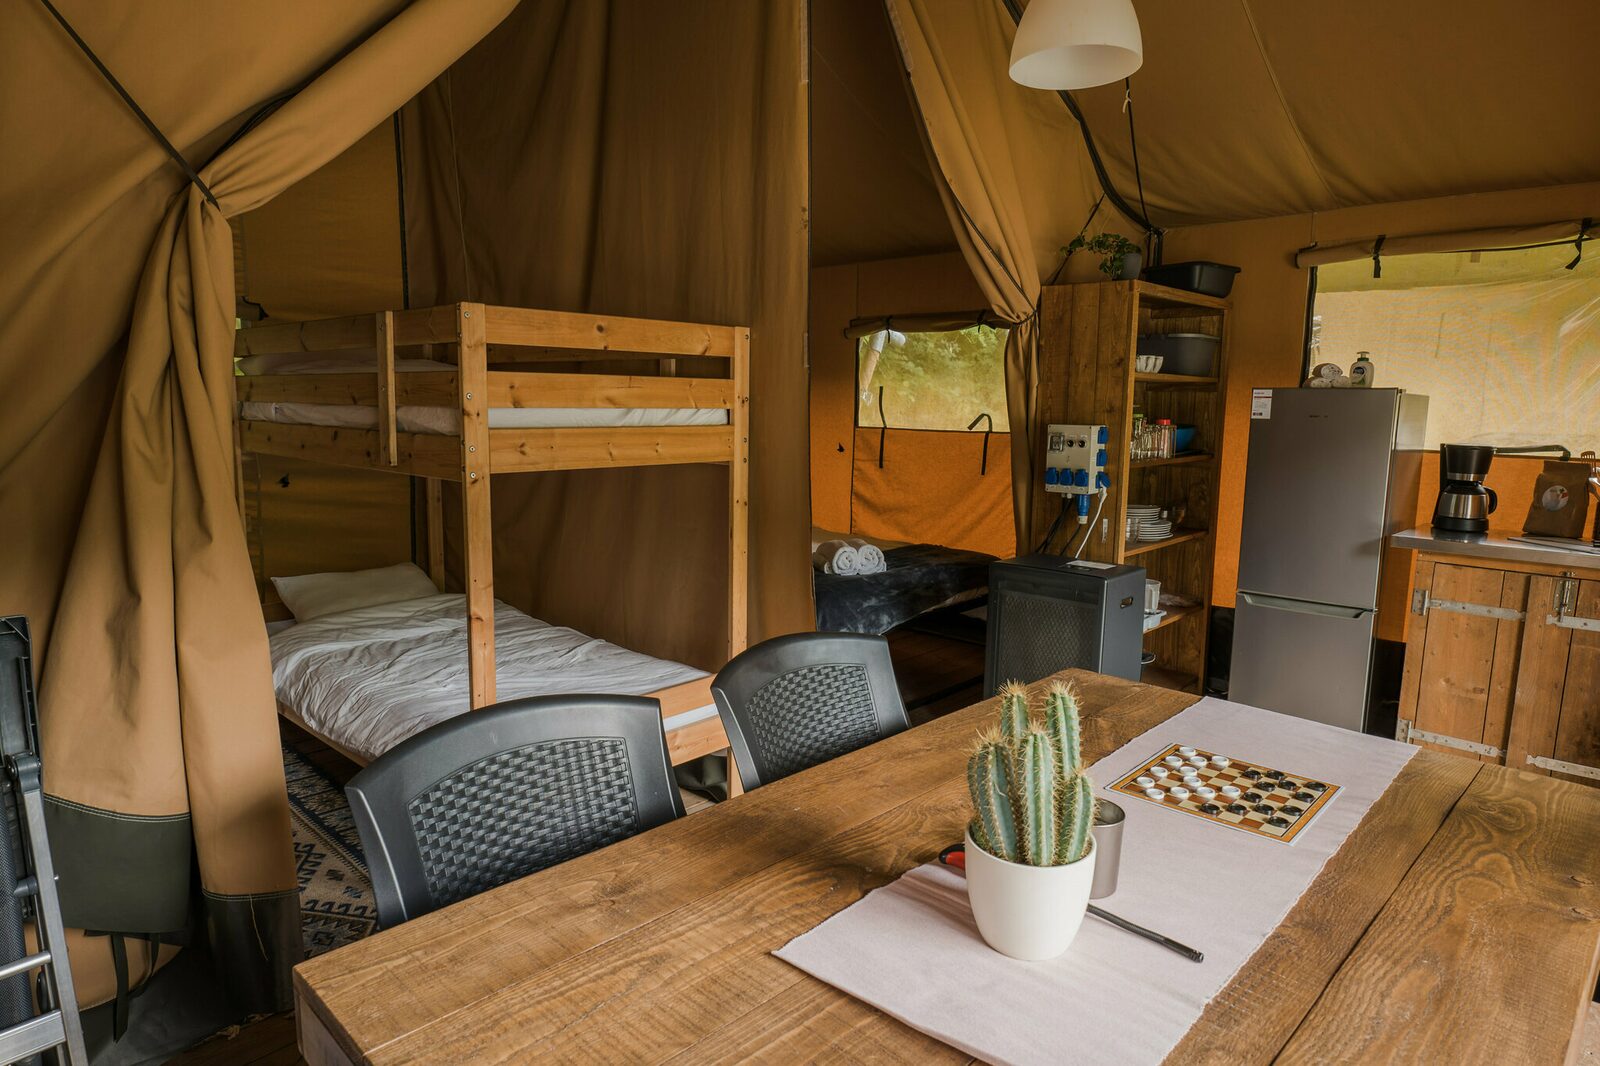 Safari tent La Rochette